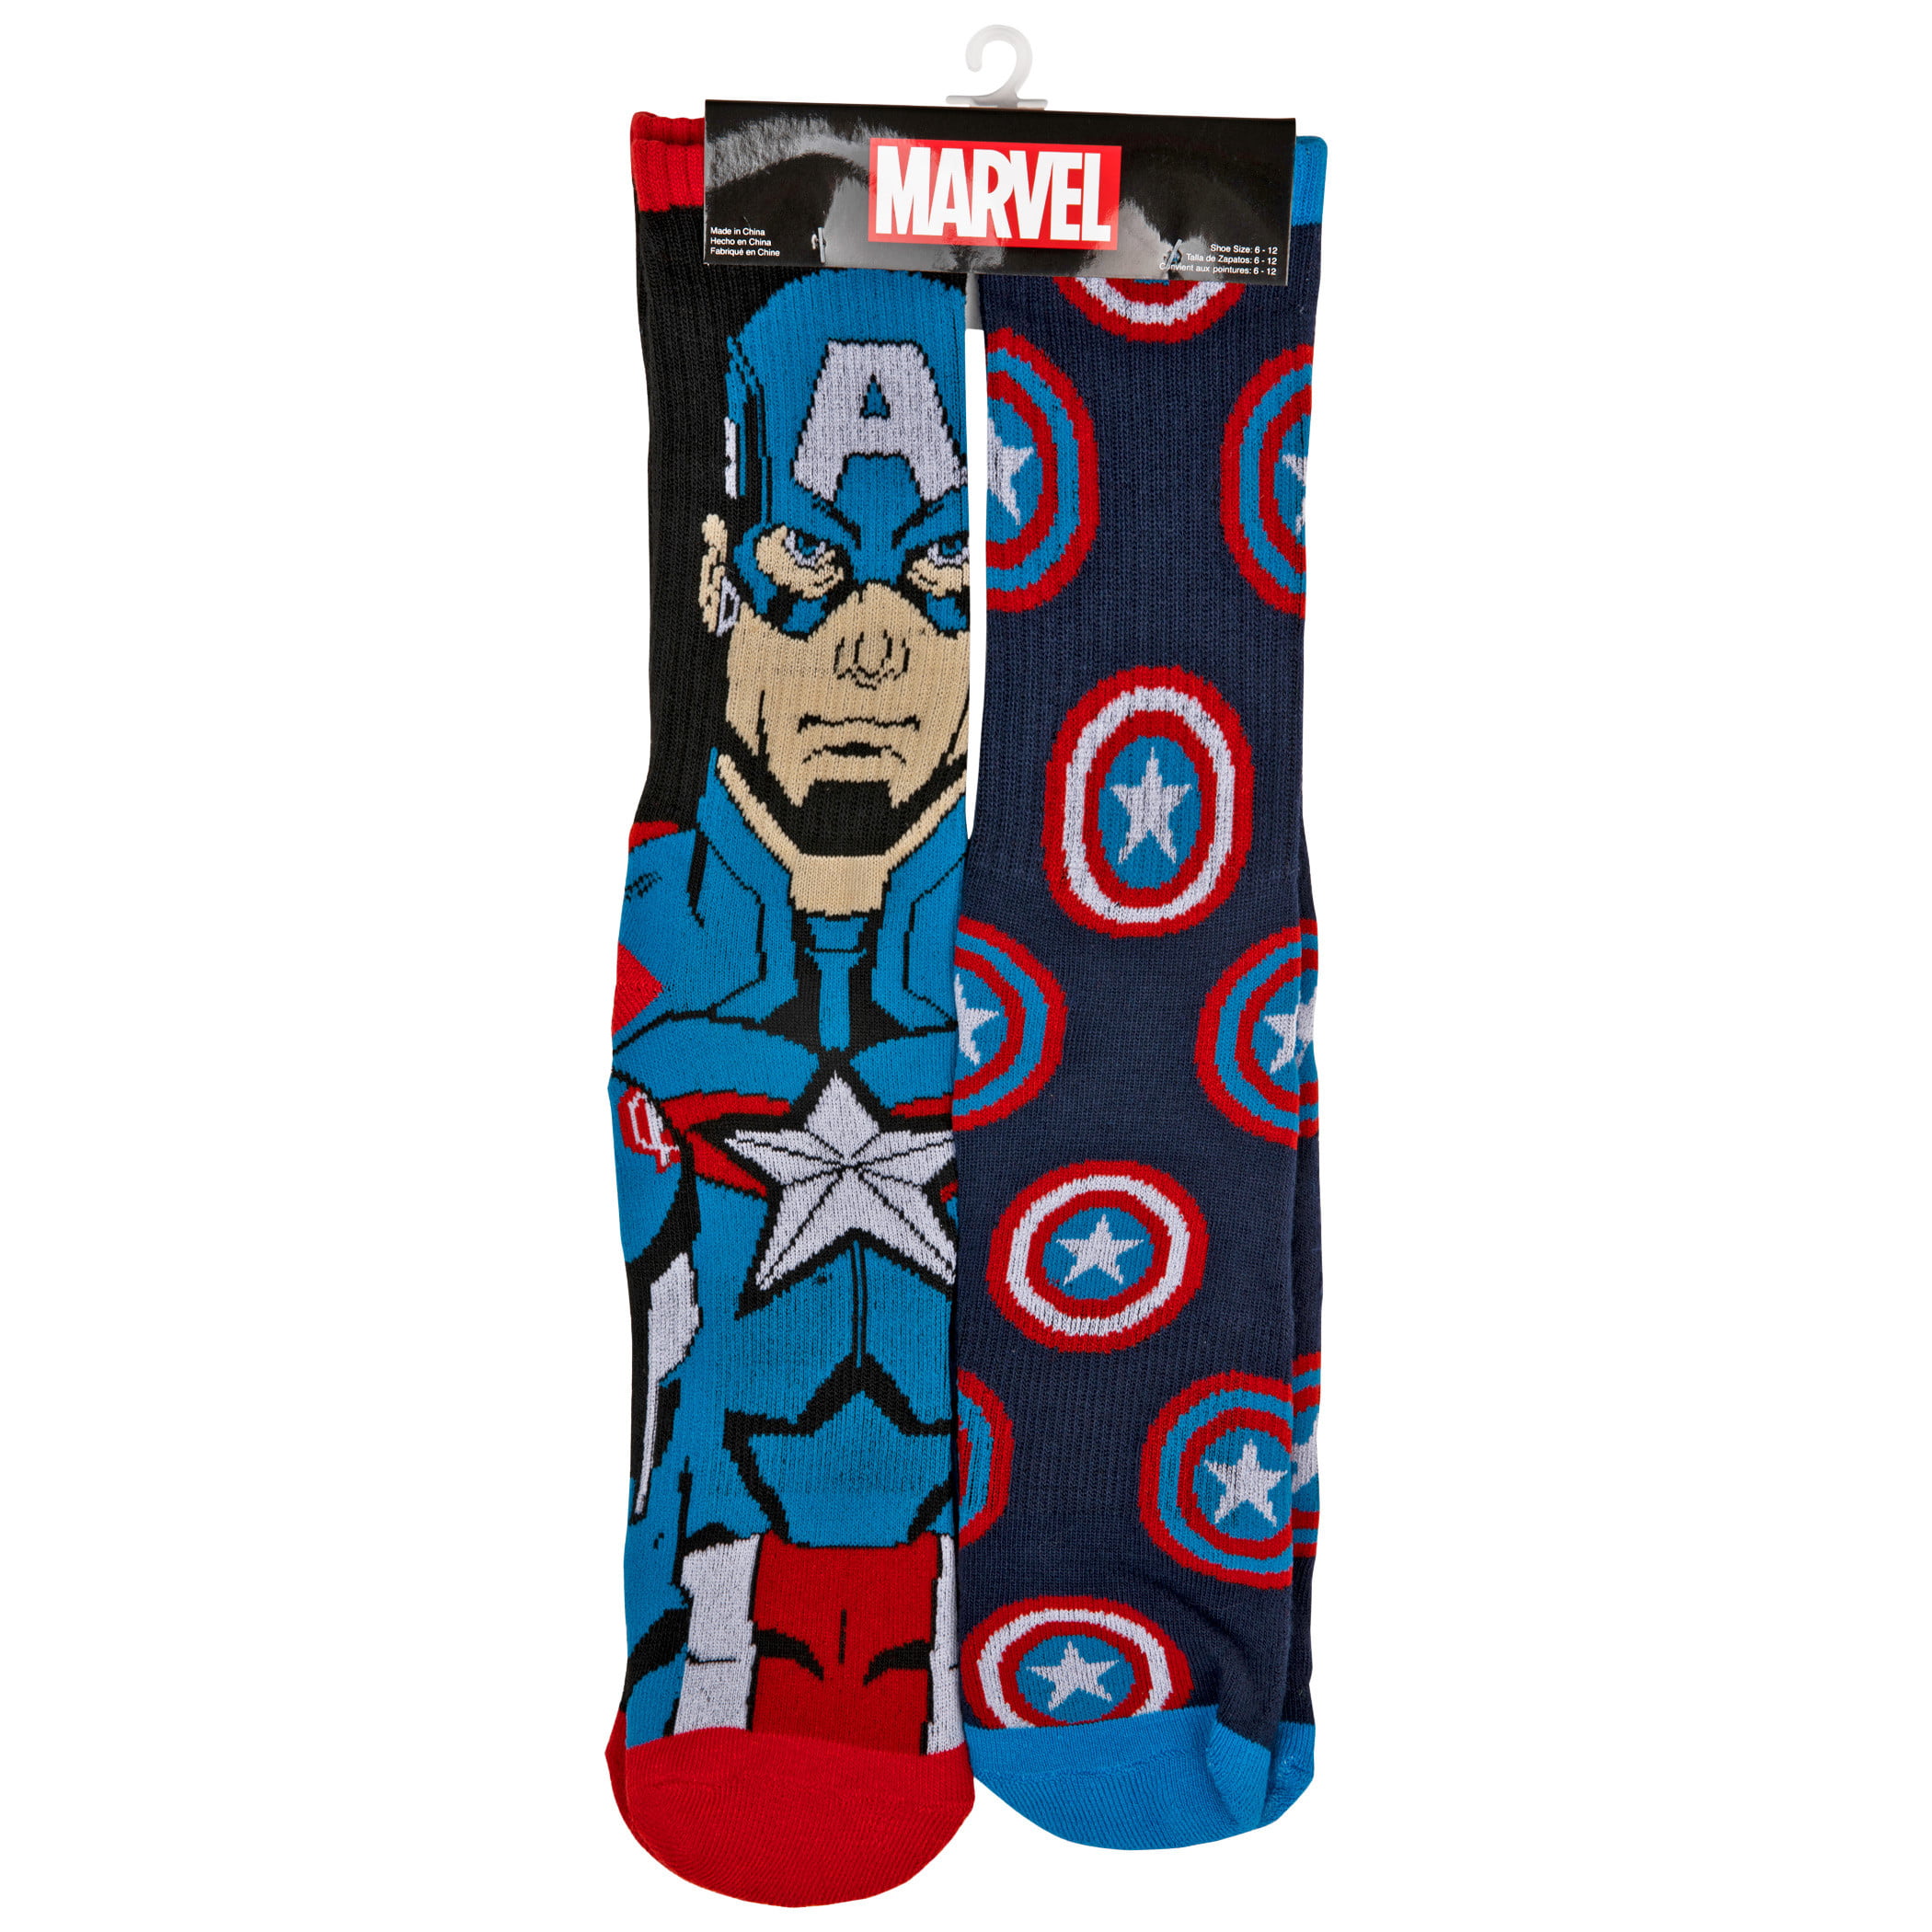 Boys 2 Pack Marvel Comics Trainer Socks Hulk Captain America sizes 9-11 